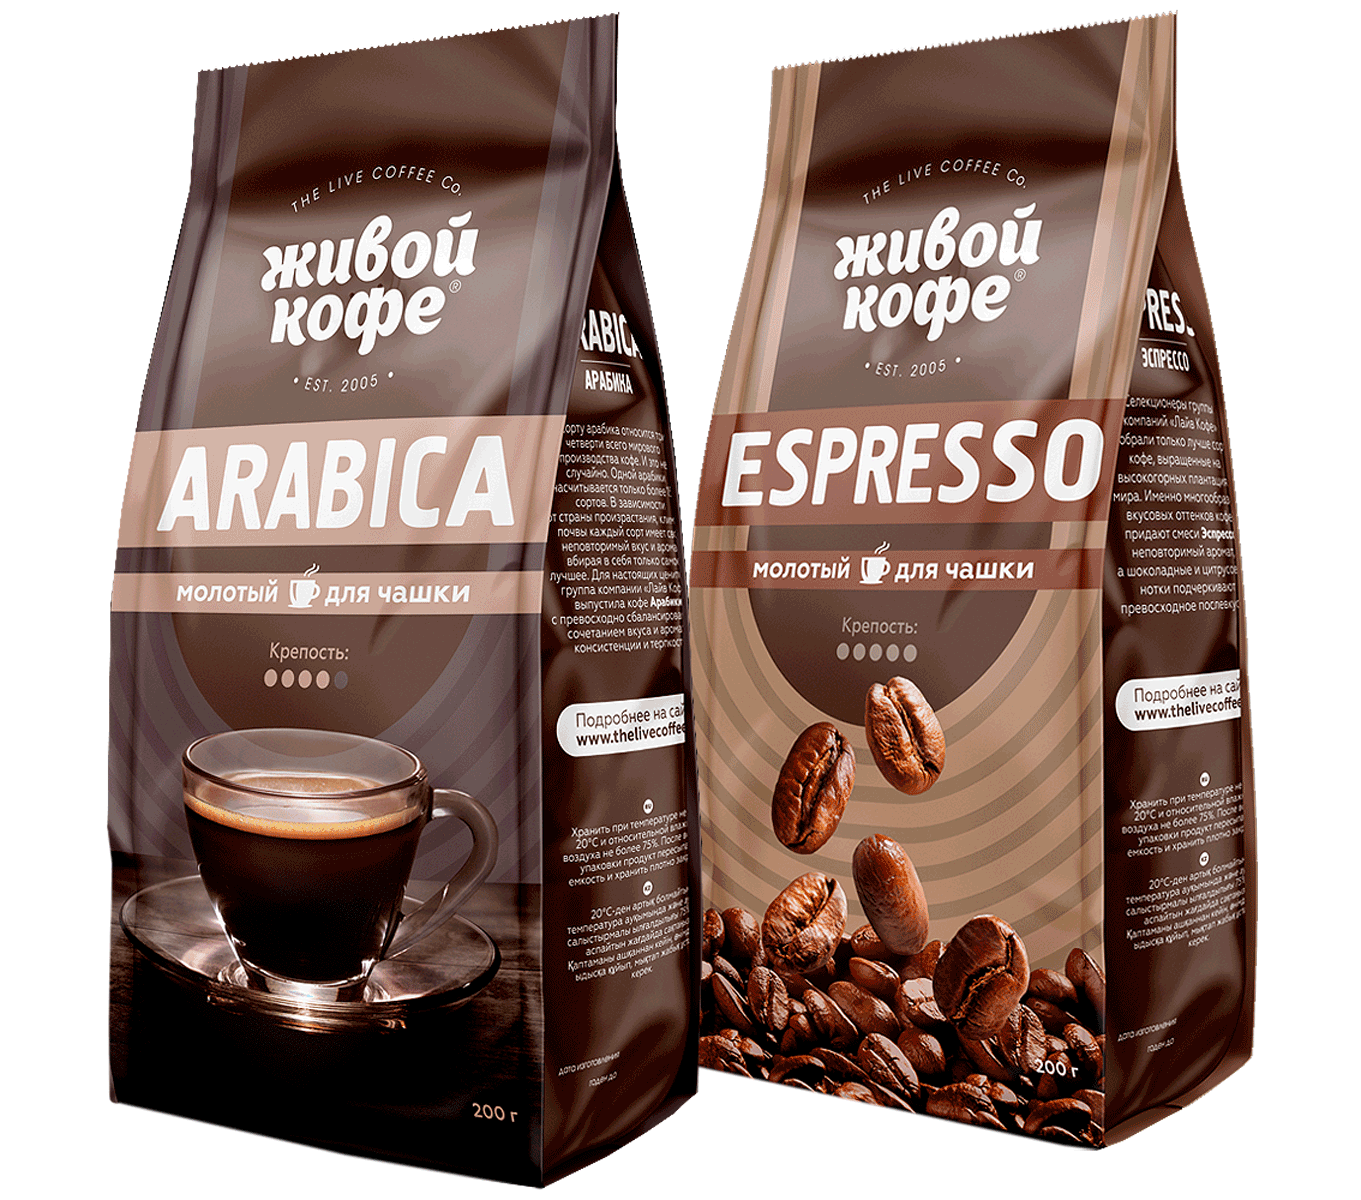 Рейтинг хорошего кофе в зернах отзывы. Живой кофе Арабика в зернах. Кофе Арабика эспрессо. Упаковка кофе в зернах. Марки кофе в зернах.